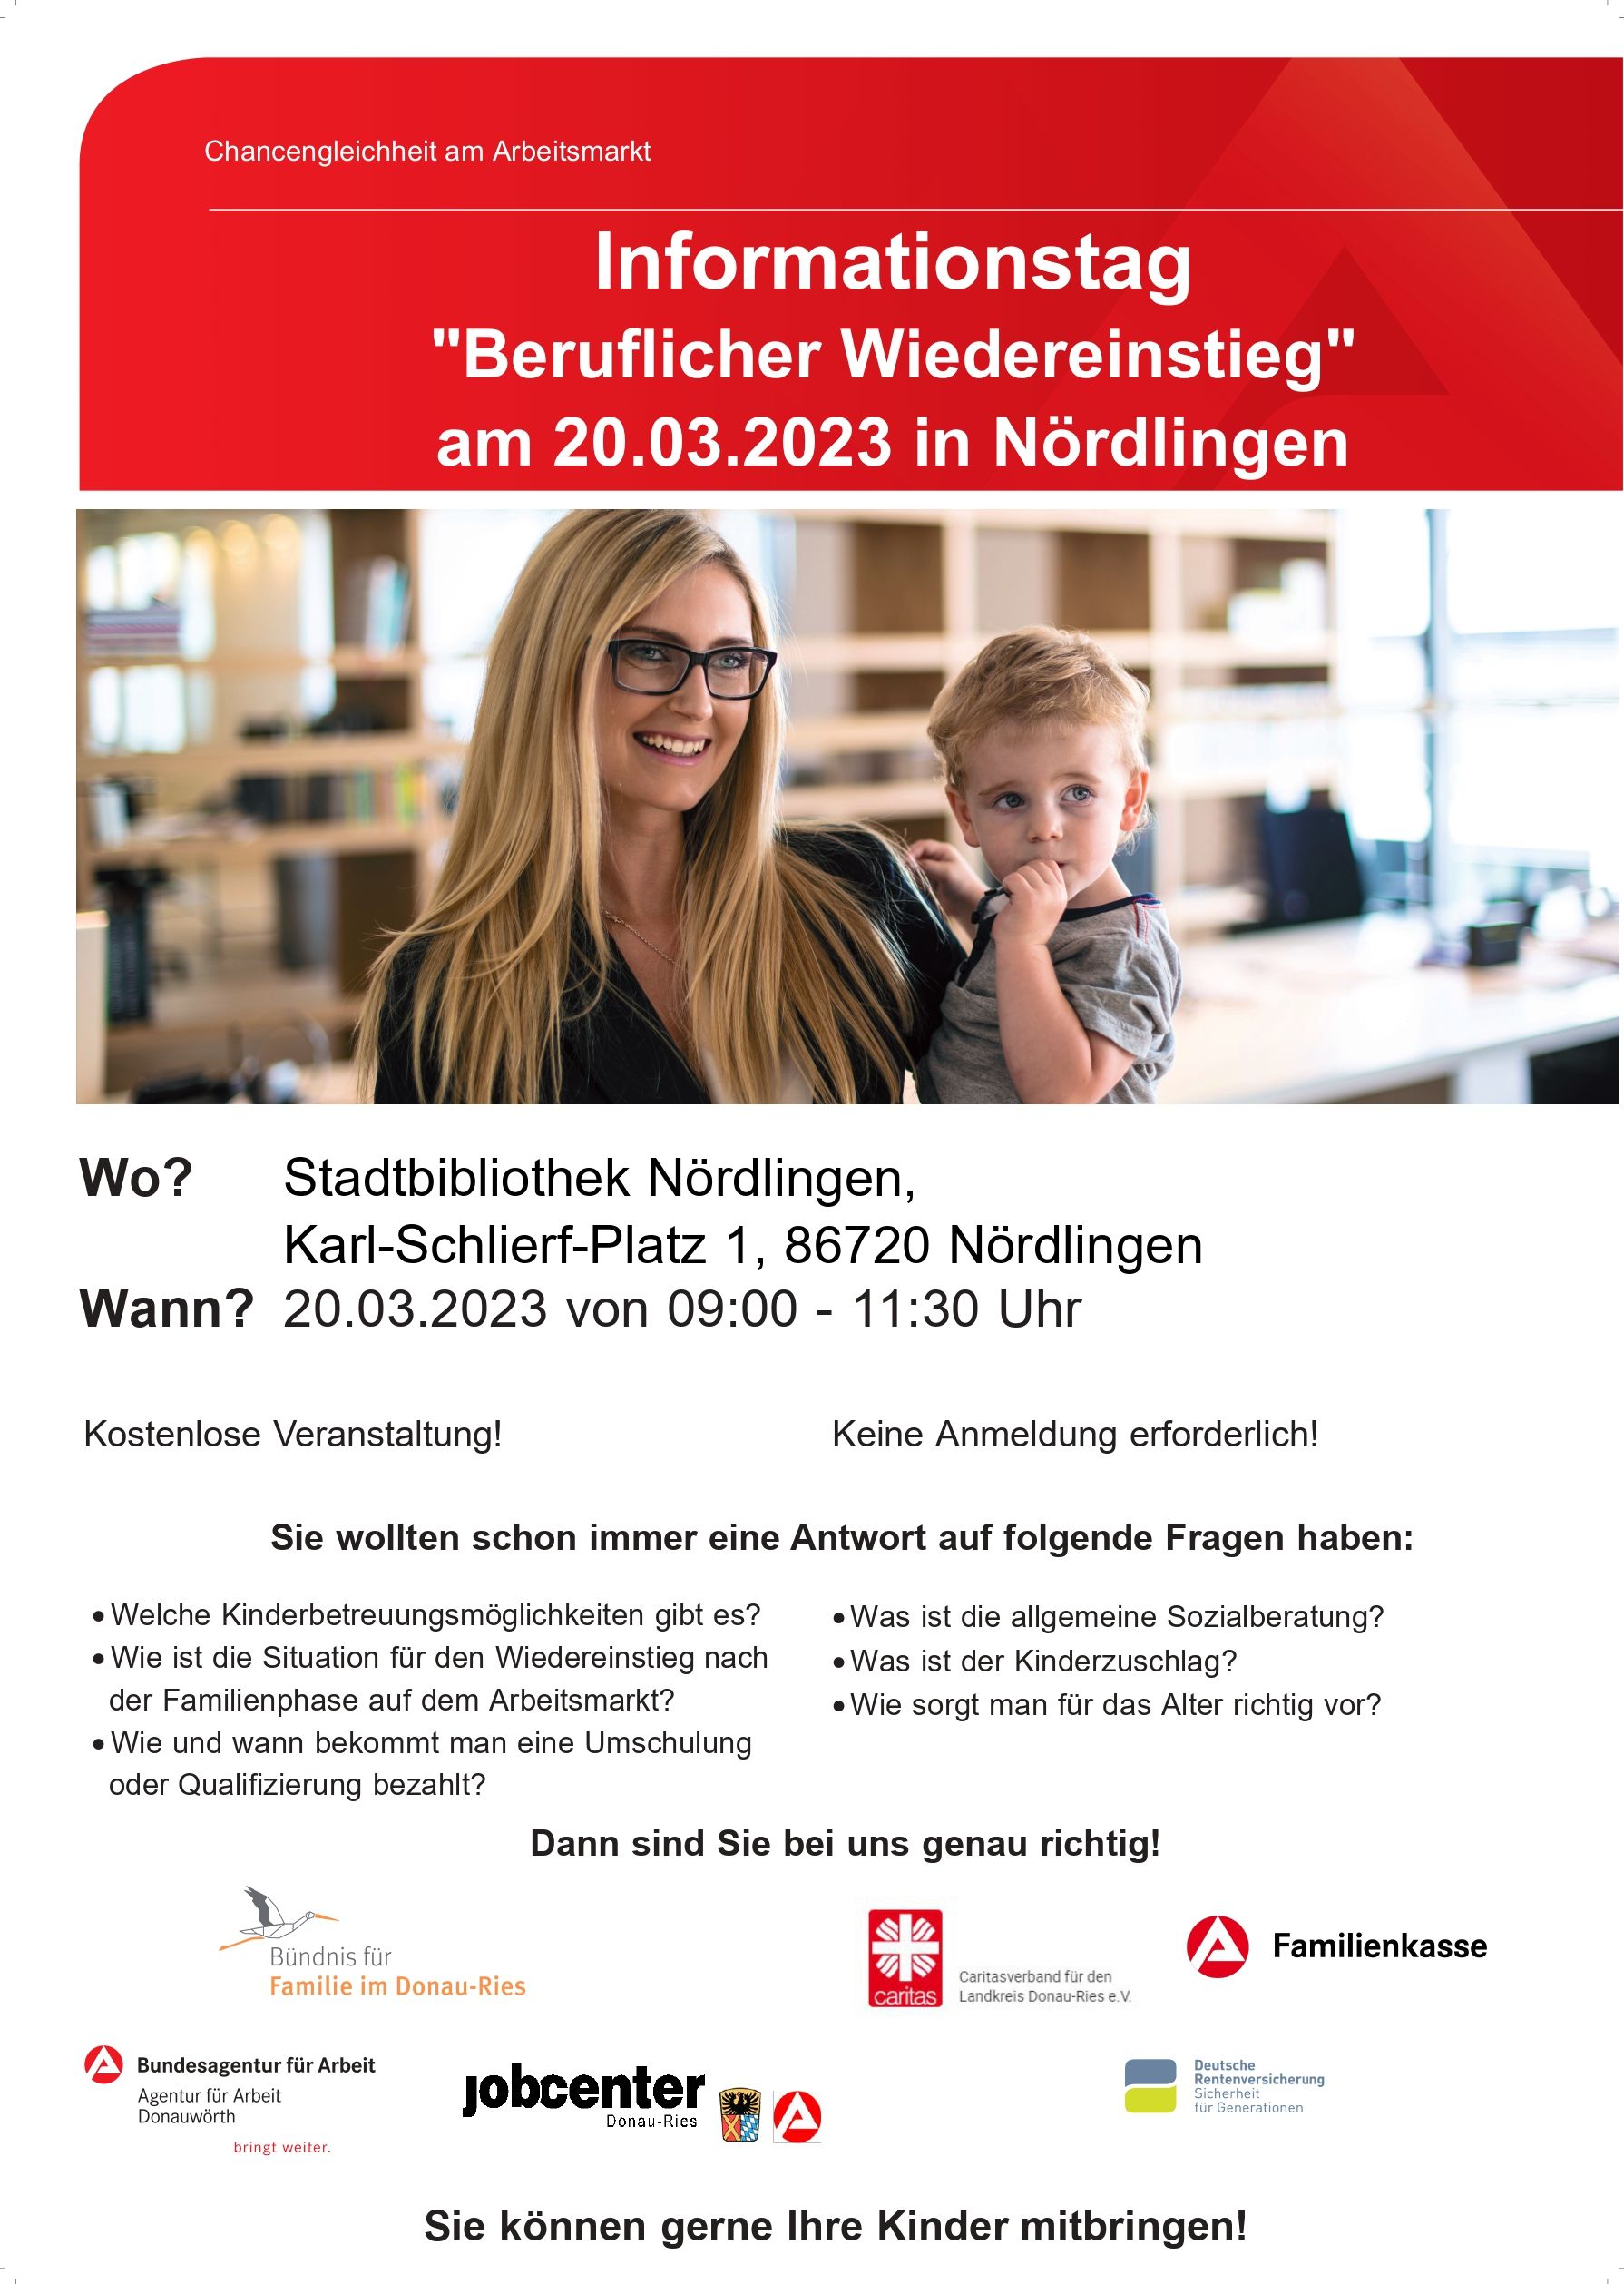 Beruflicher Wiedereinstieg, Infoveranstaltung in Nördlingen am 20.03.2023